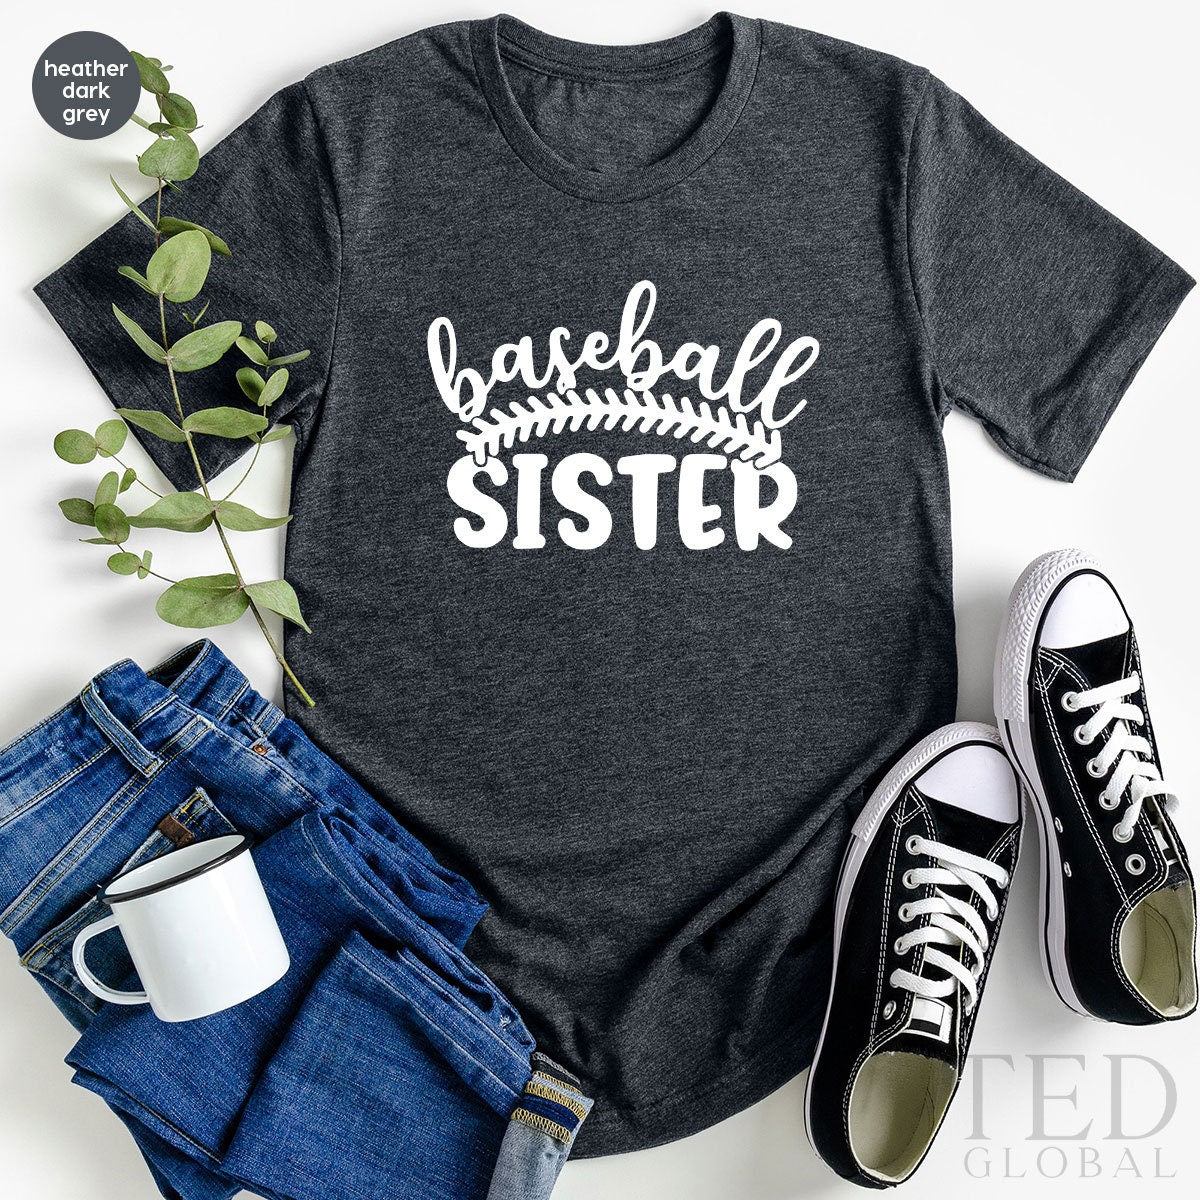 Baseball Sister Shirt, Baseball Girl T Shirt, Softball Girl Tee, Game Days Shirt, Baseball Lover Shirt, Gift For Sister, Little Sister Tee - Fastdeliverytees.com